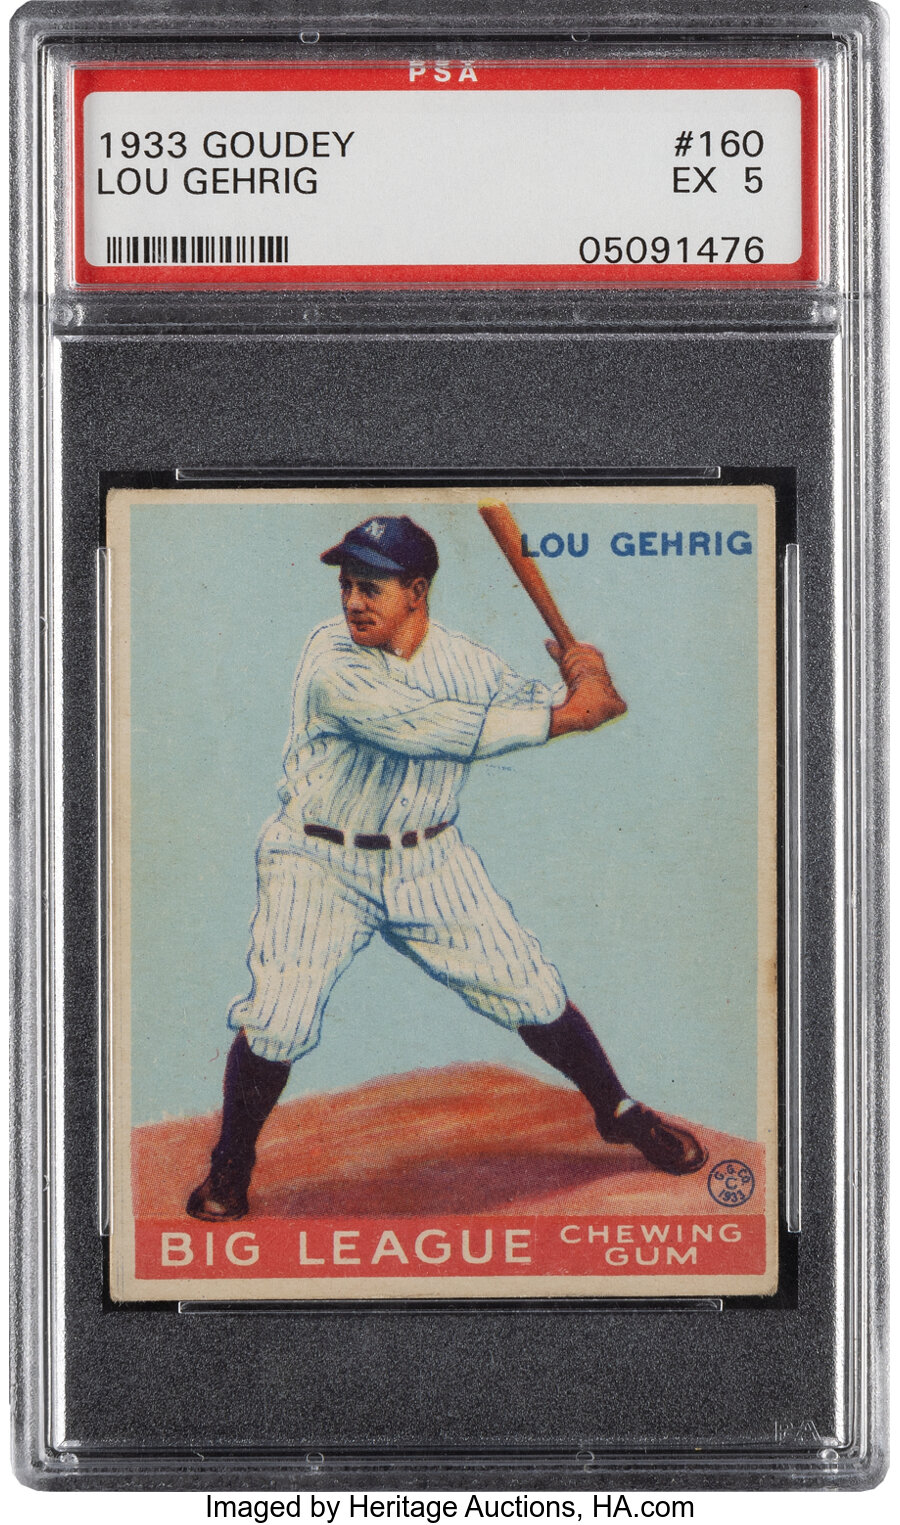 1933 Goudey Lou Gehrig #160 PSA EX 5